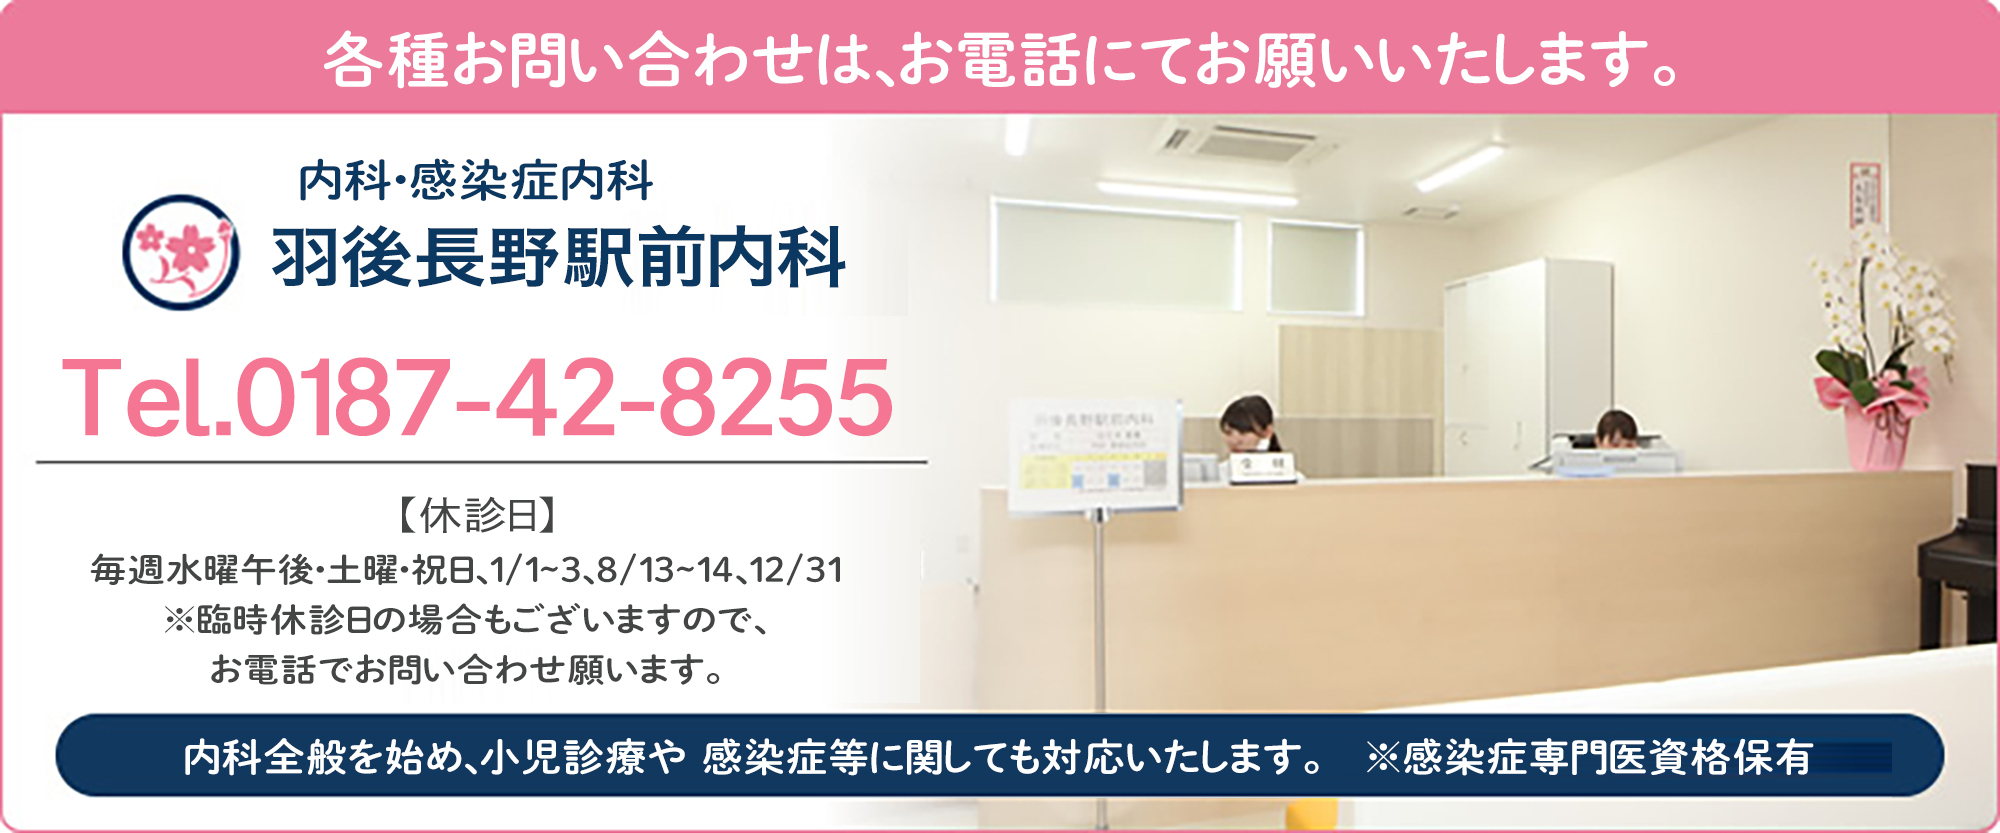 羽後長野駅前内科への各種お問い合わせは、お電話にてお願い致します。tel0187-42-8255